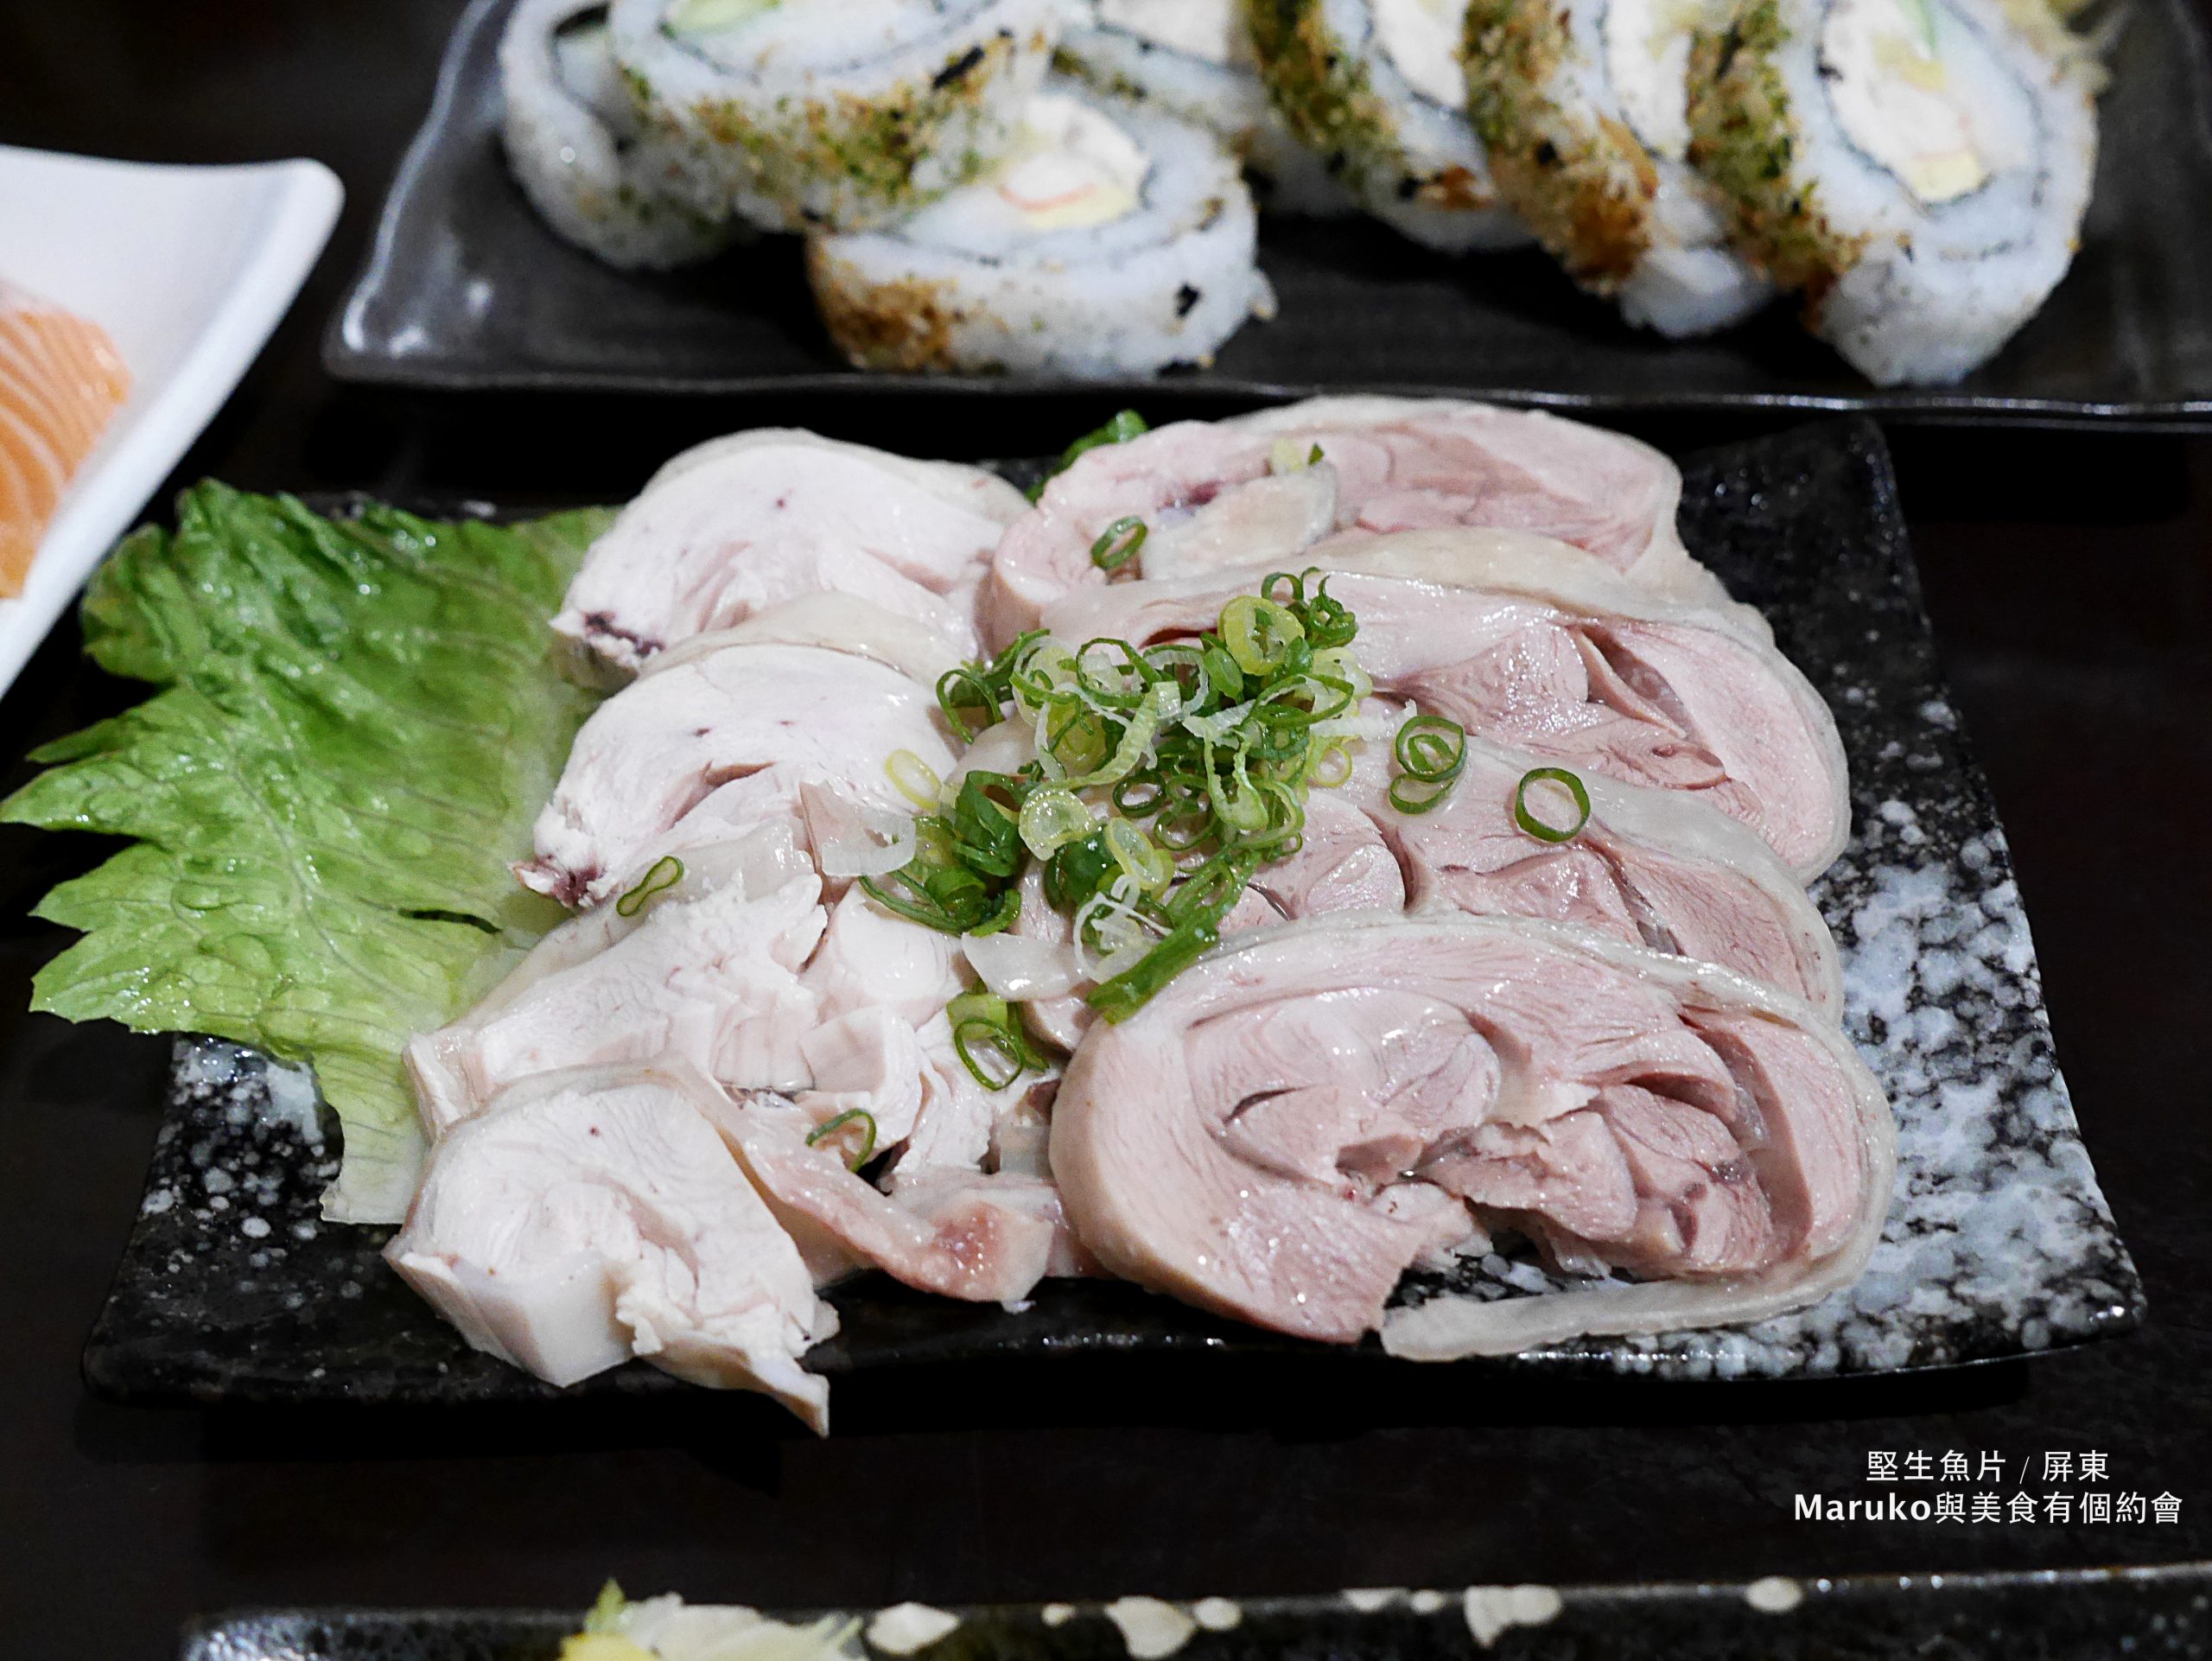 【屏東美食】堅生魚片-現切超厚生魚片無菜單燒烤料理 @Maruko與美食有個約會